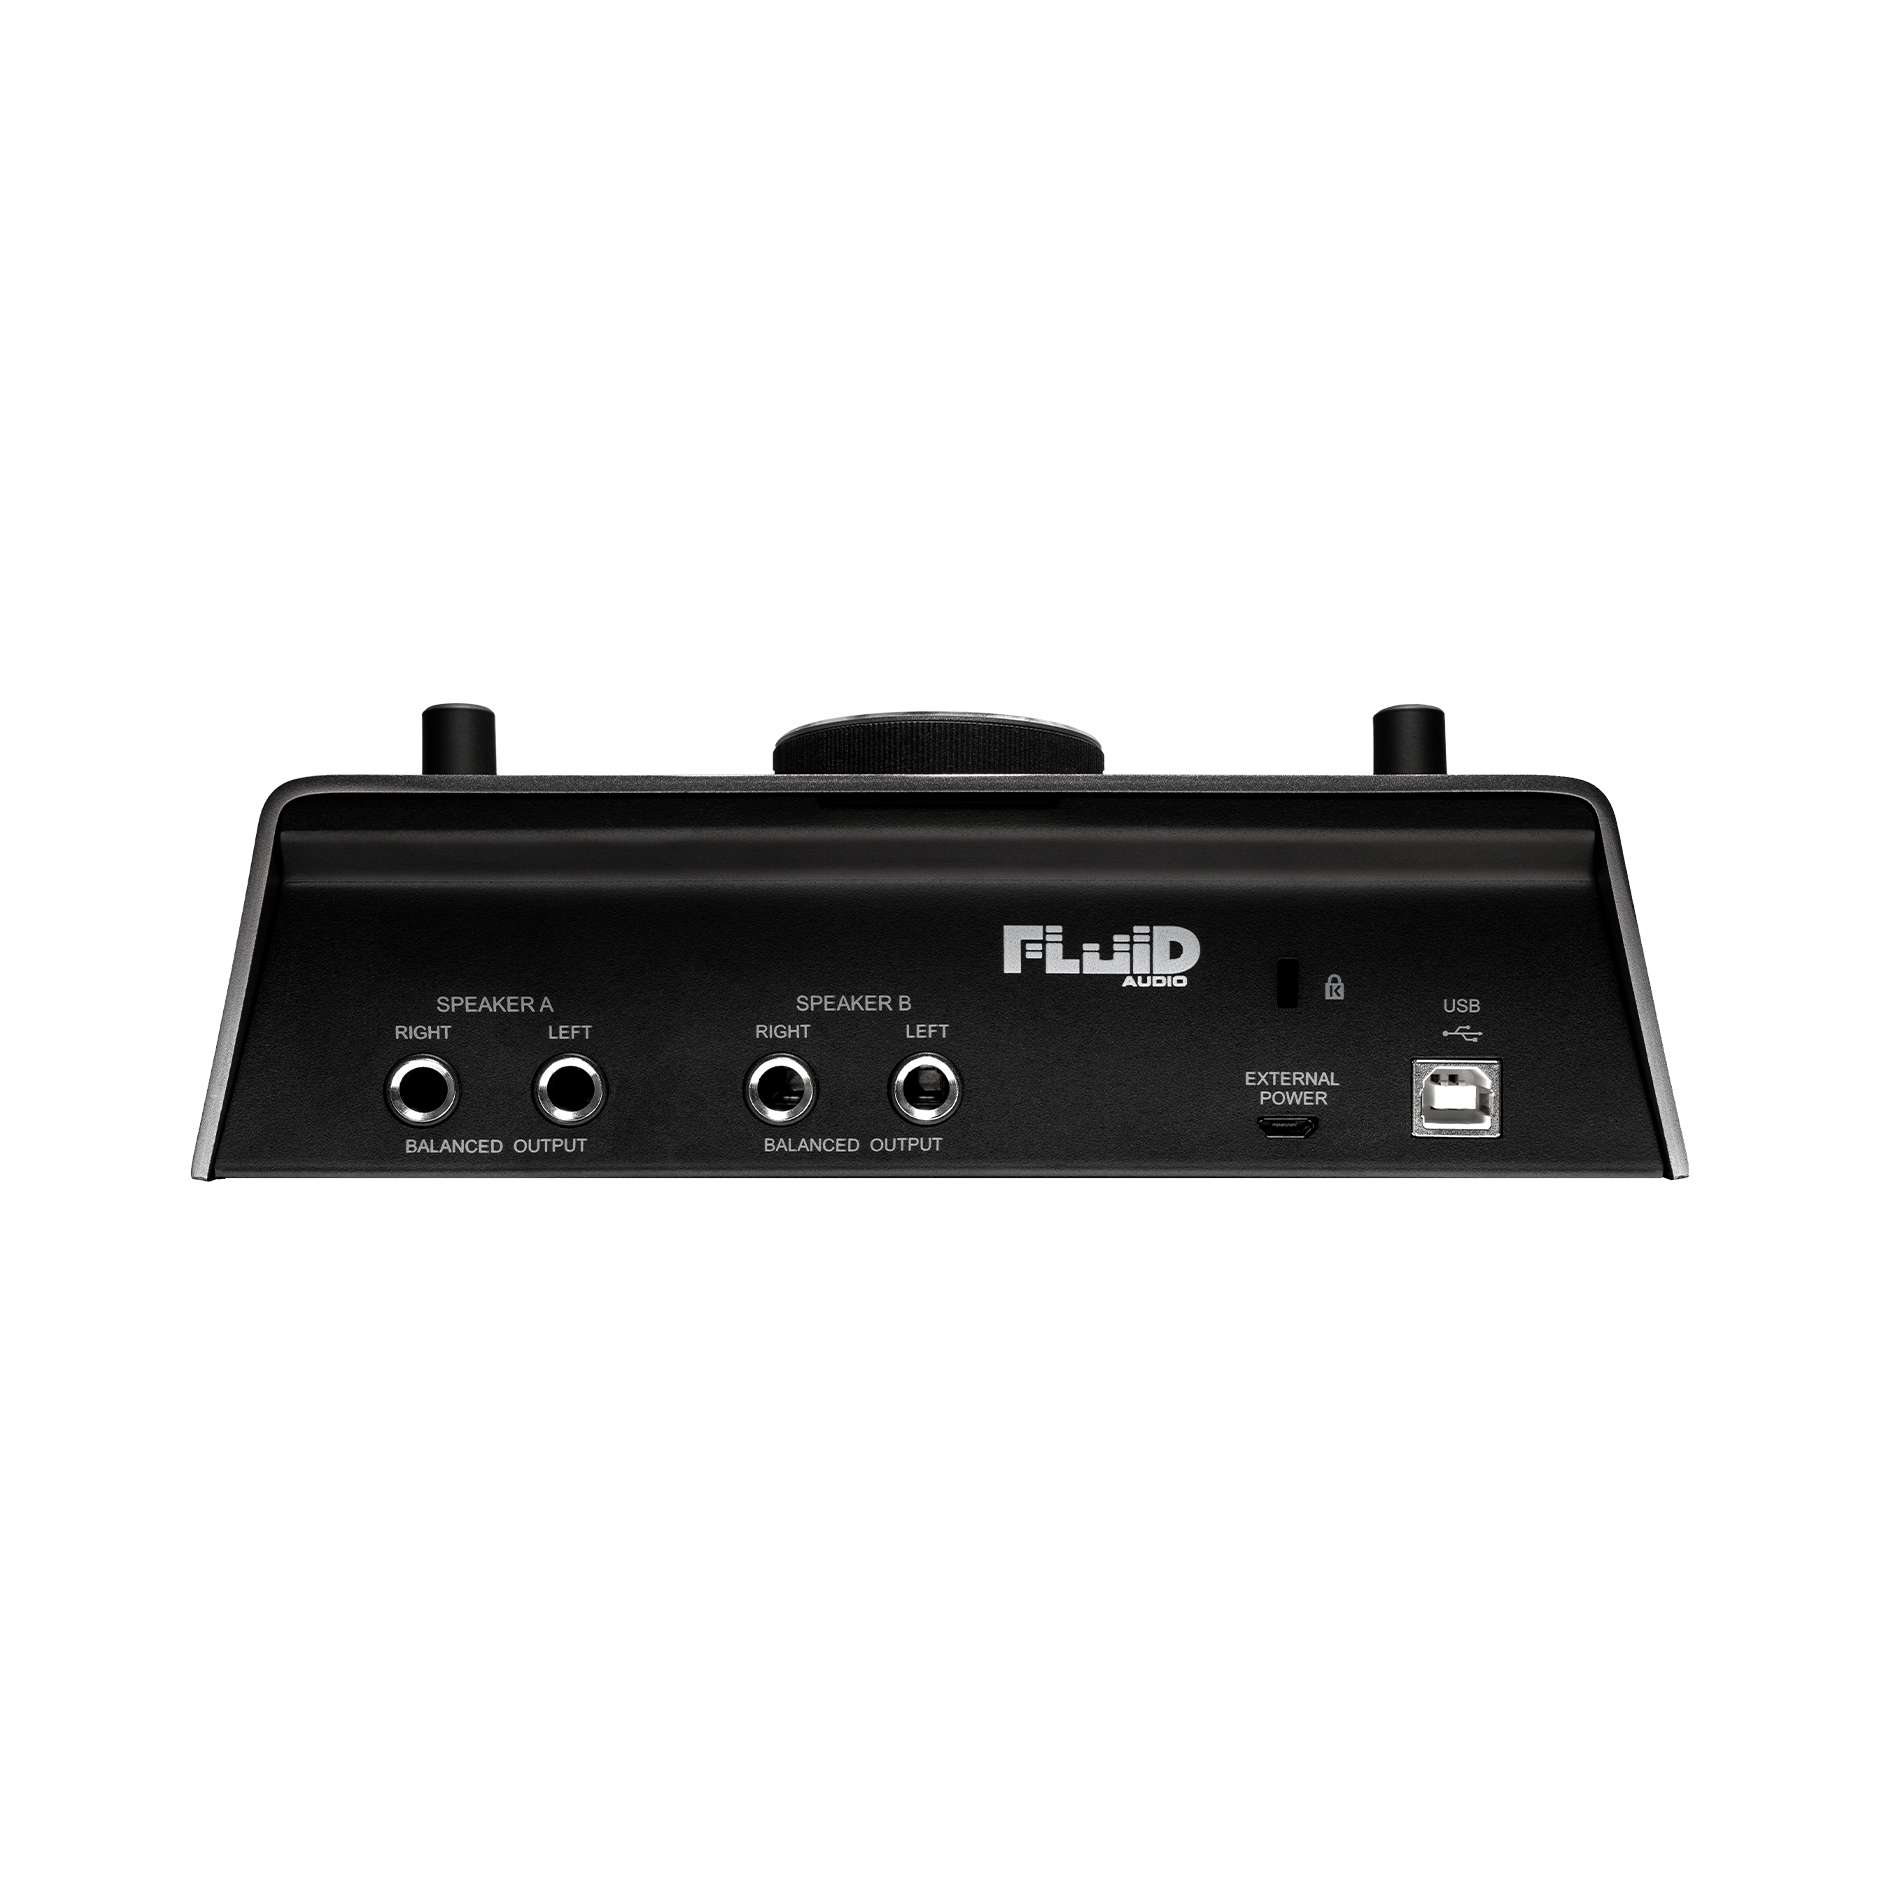 Fluid Audio Sri-2 - USB audio interface - Variation 3